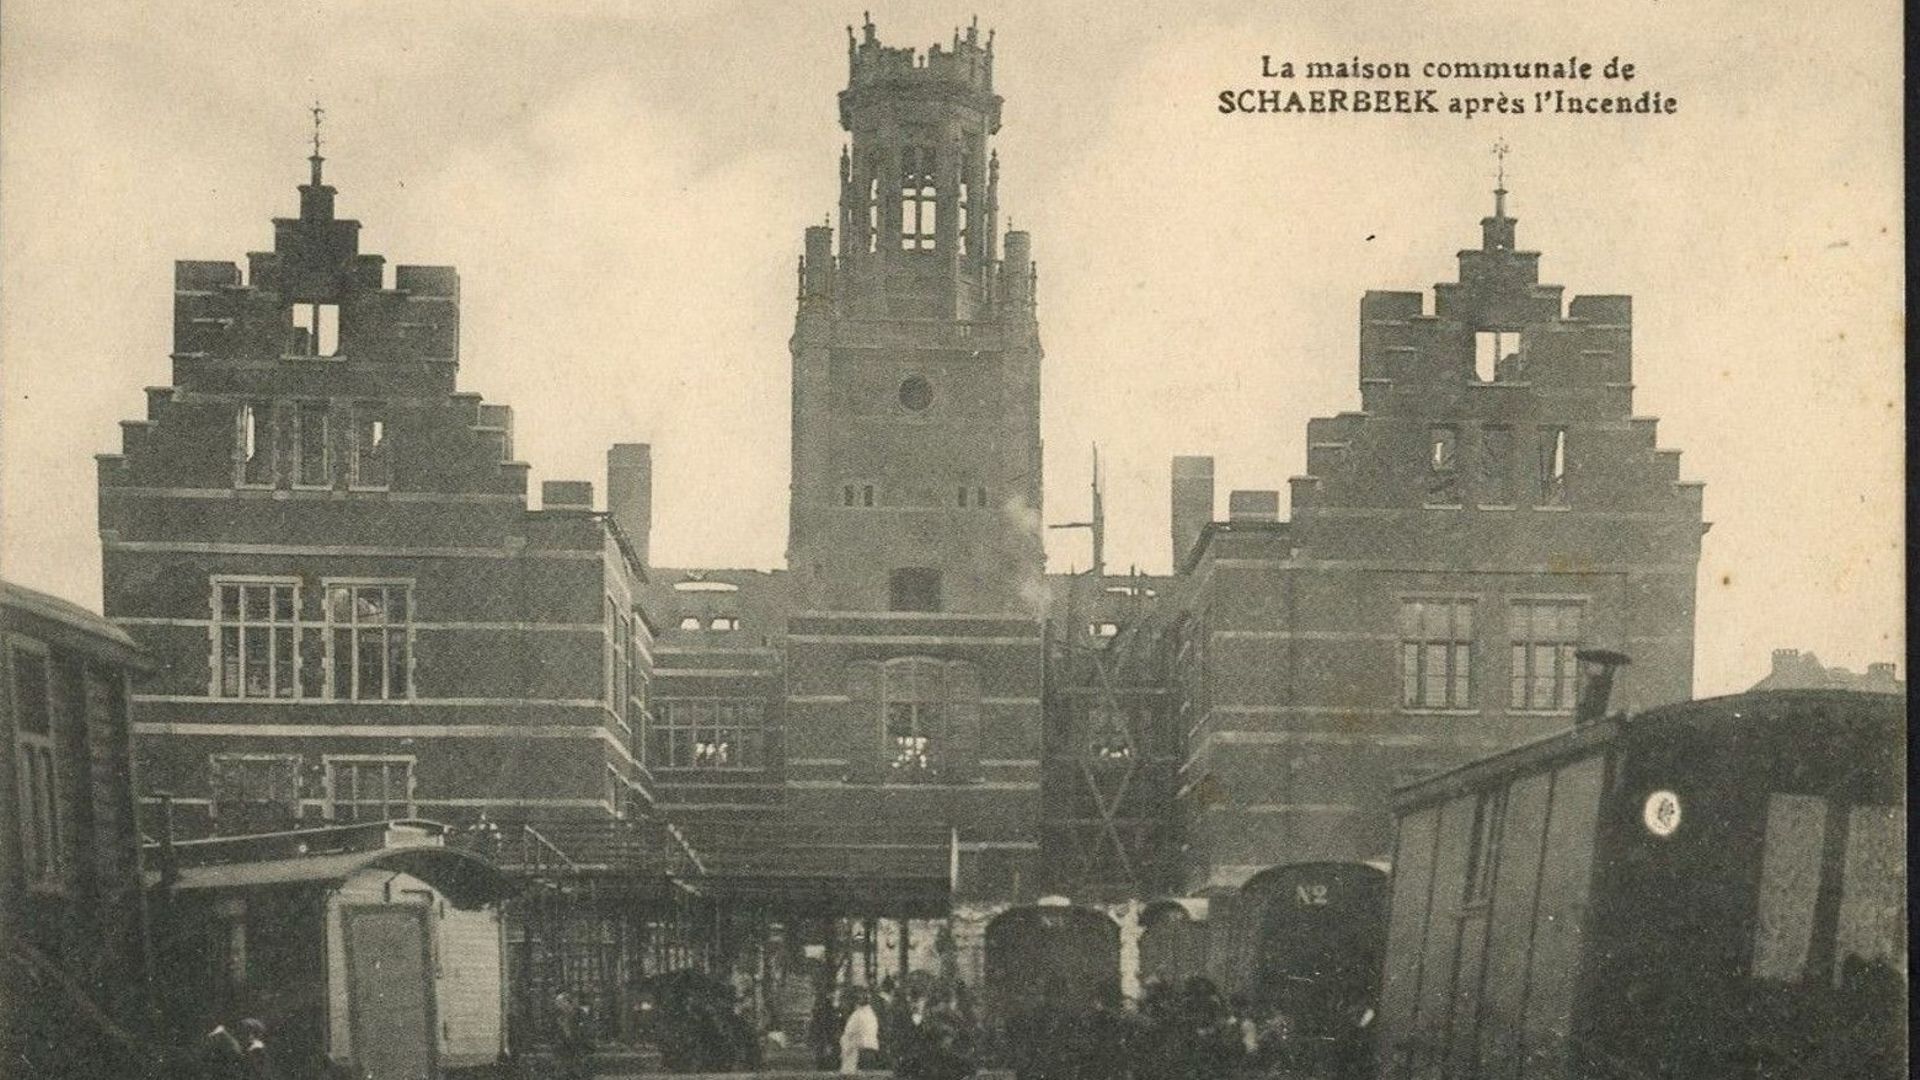 Ce qu’il reste de l’hôtel communal de Schaerbeek après l’incendie dans la nuit du 17 au 18 avril 1911.